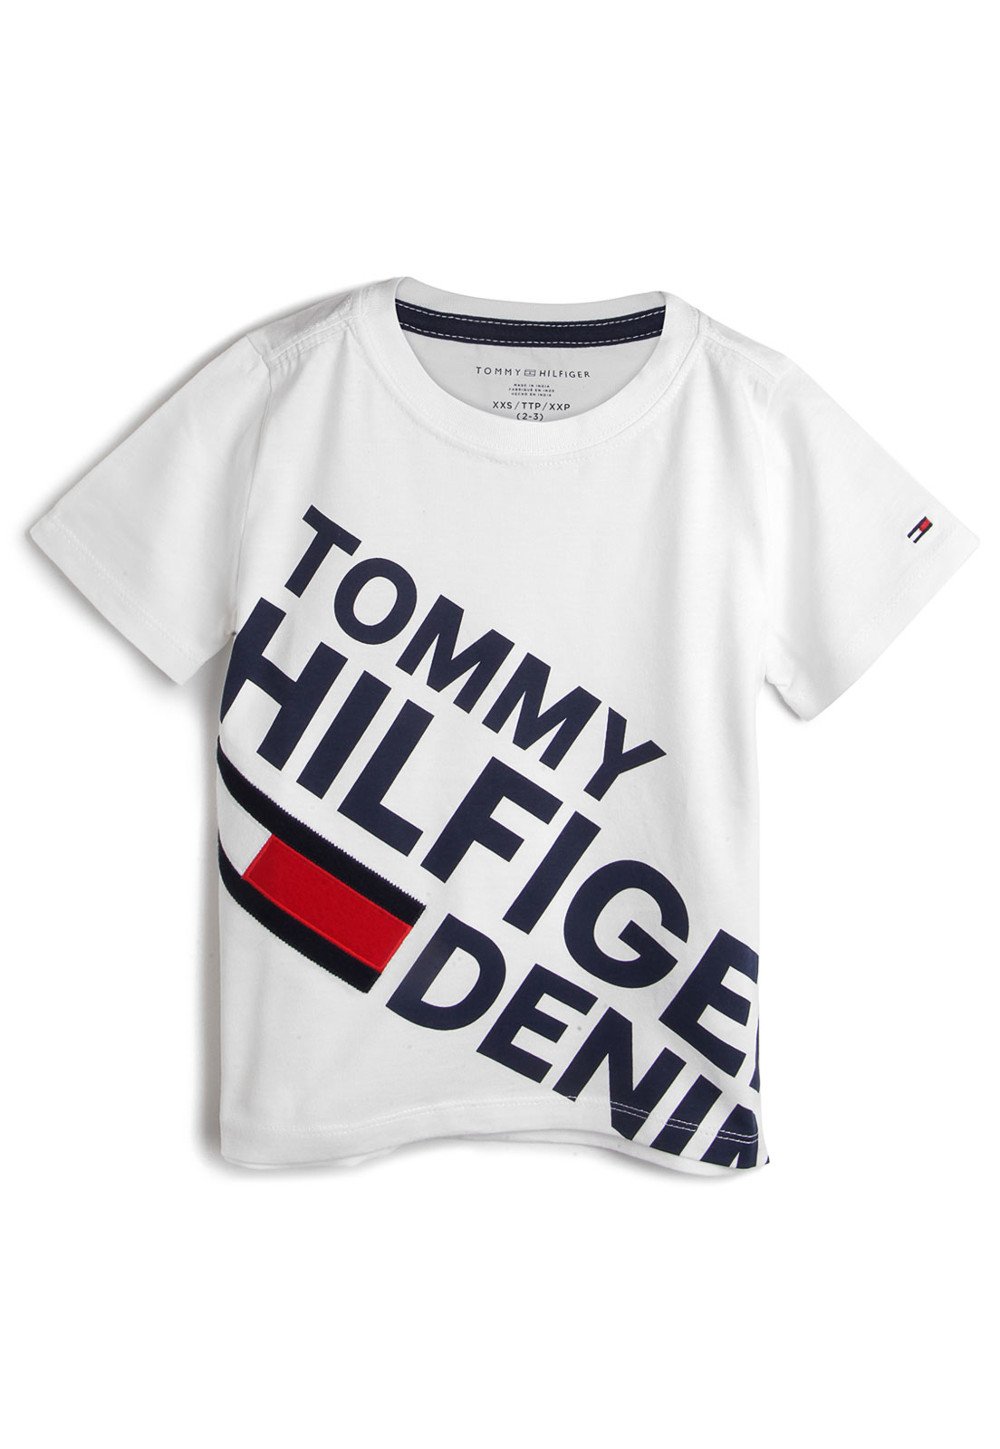 Camiseta Tommy Hilfiger Infantil Logo